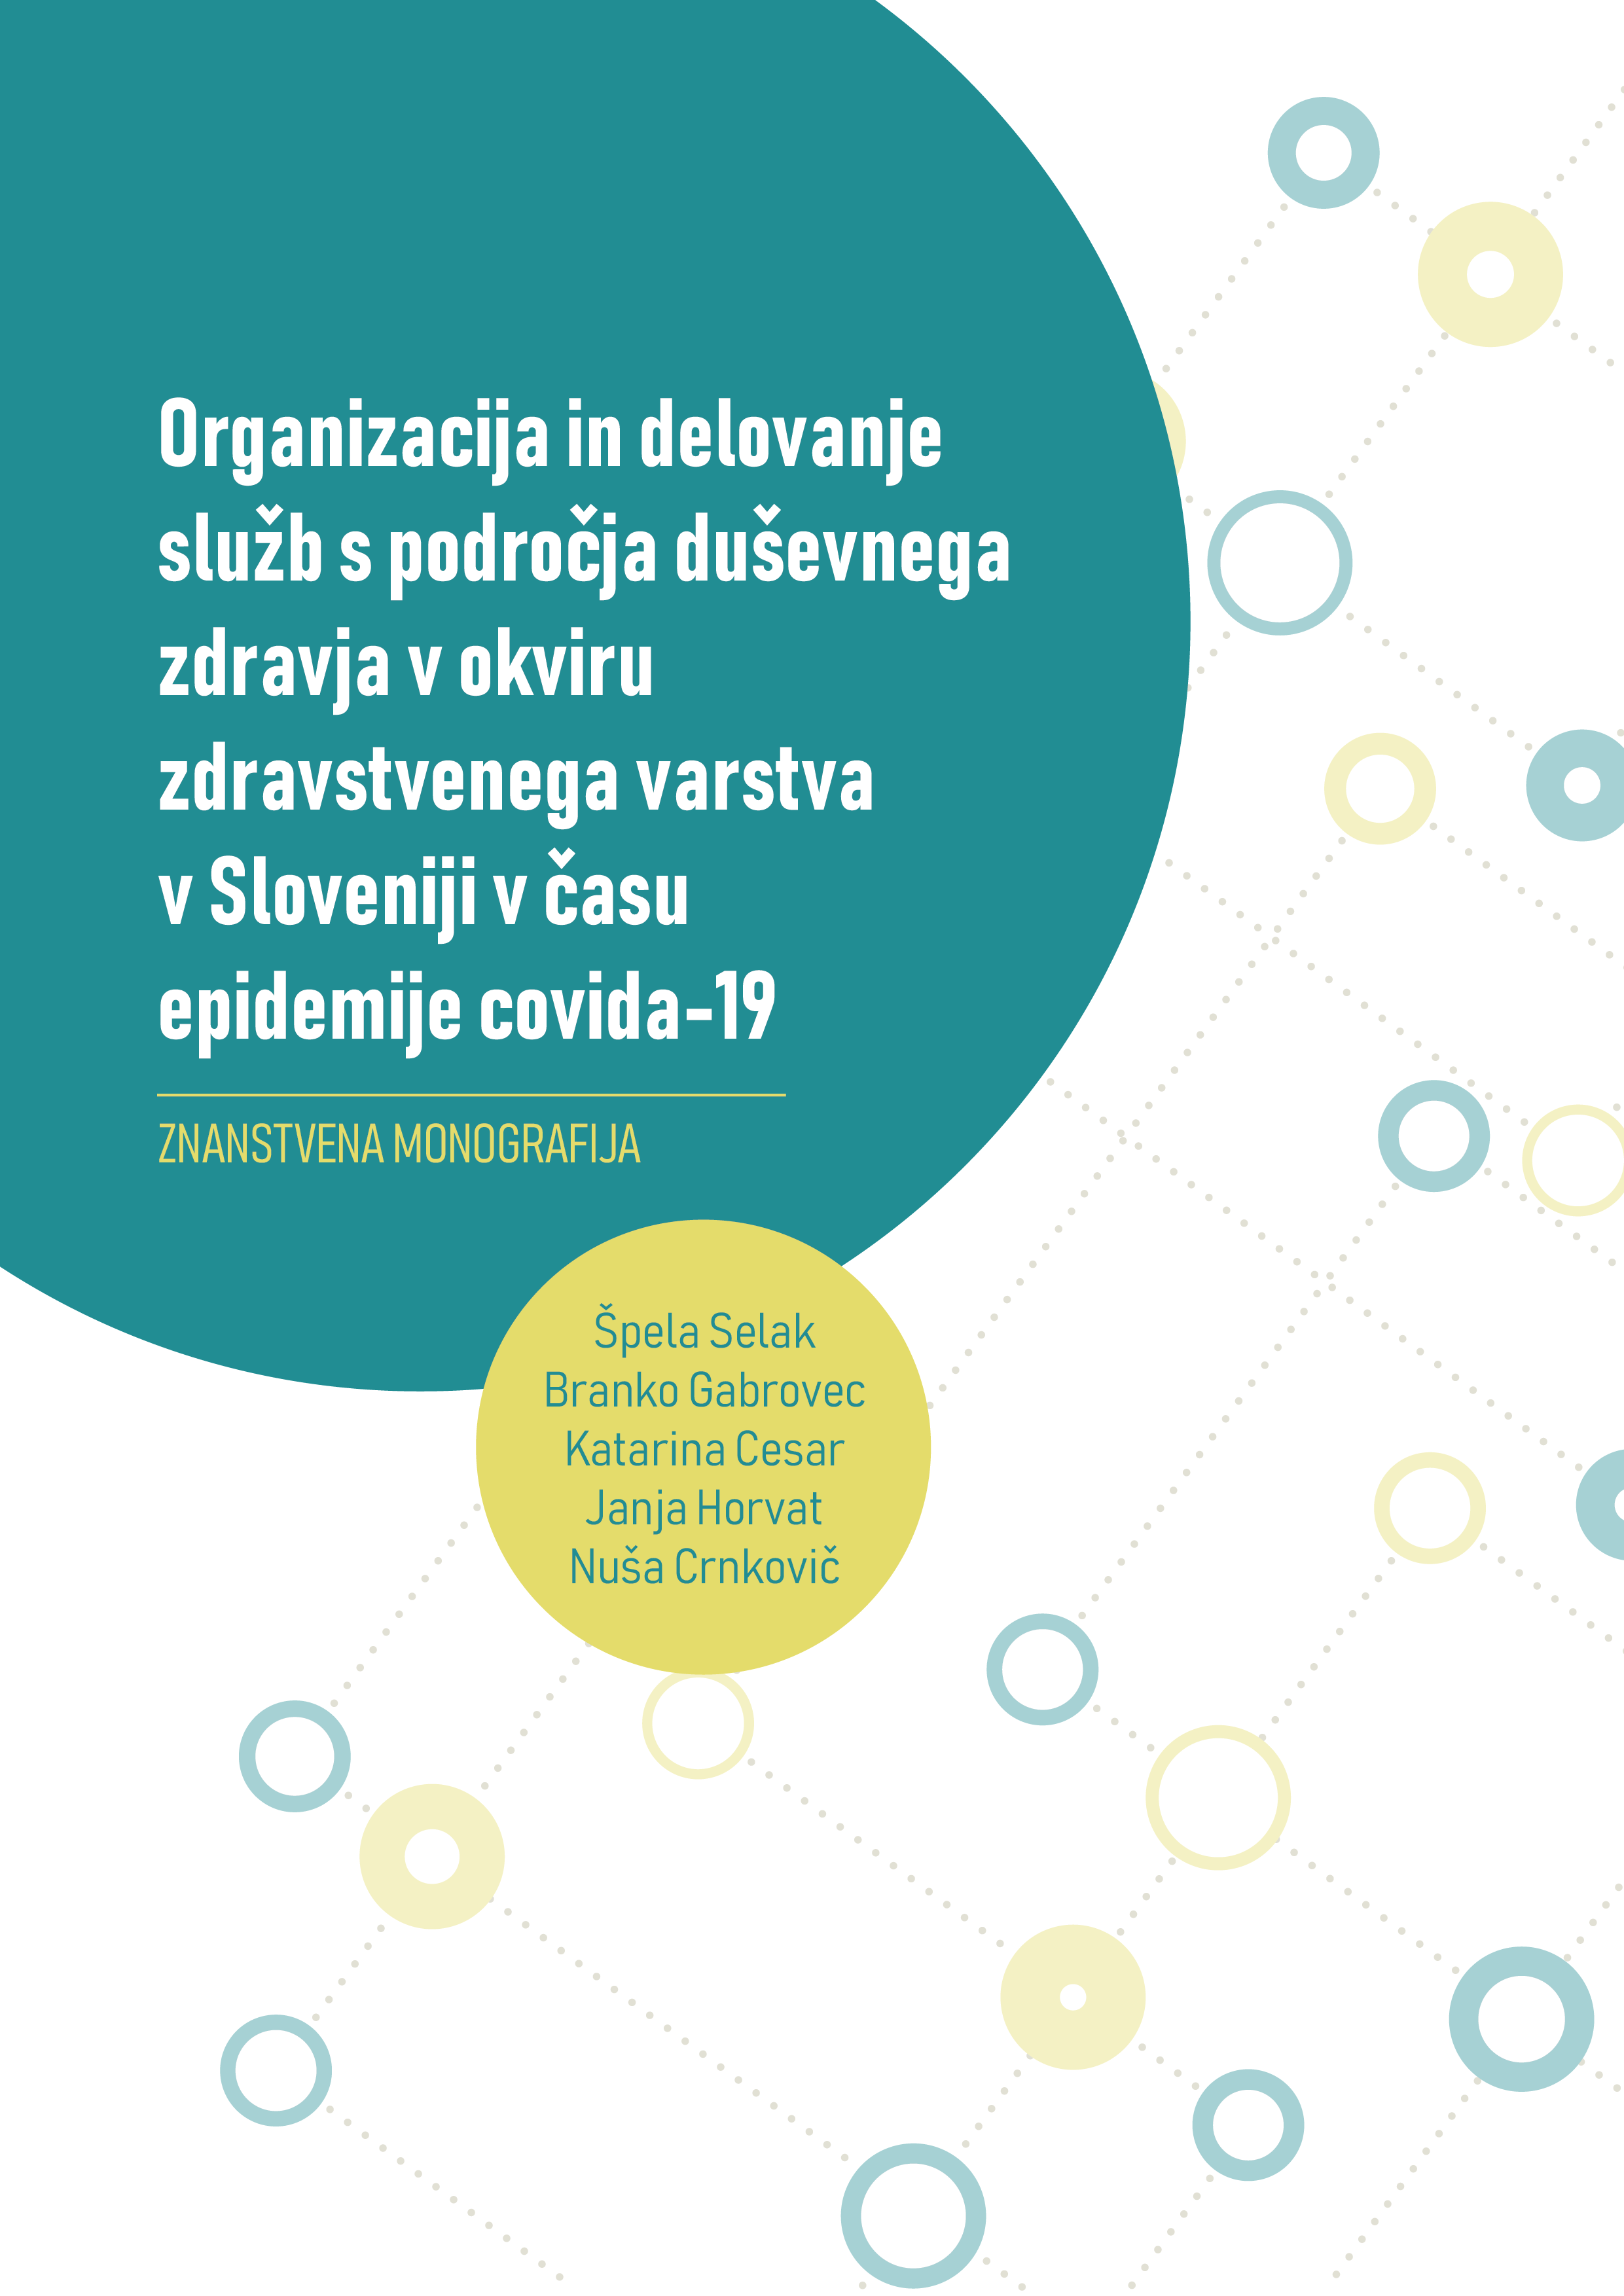 Organizacija in delovanje služb s področja duševnega zdravja v okviru zdravstvenega varstva v sloveniji v času covida-19